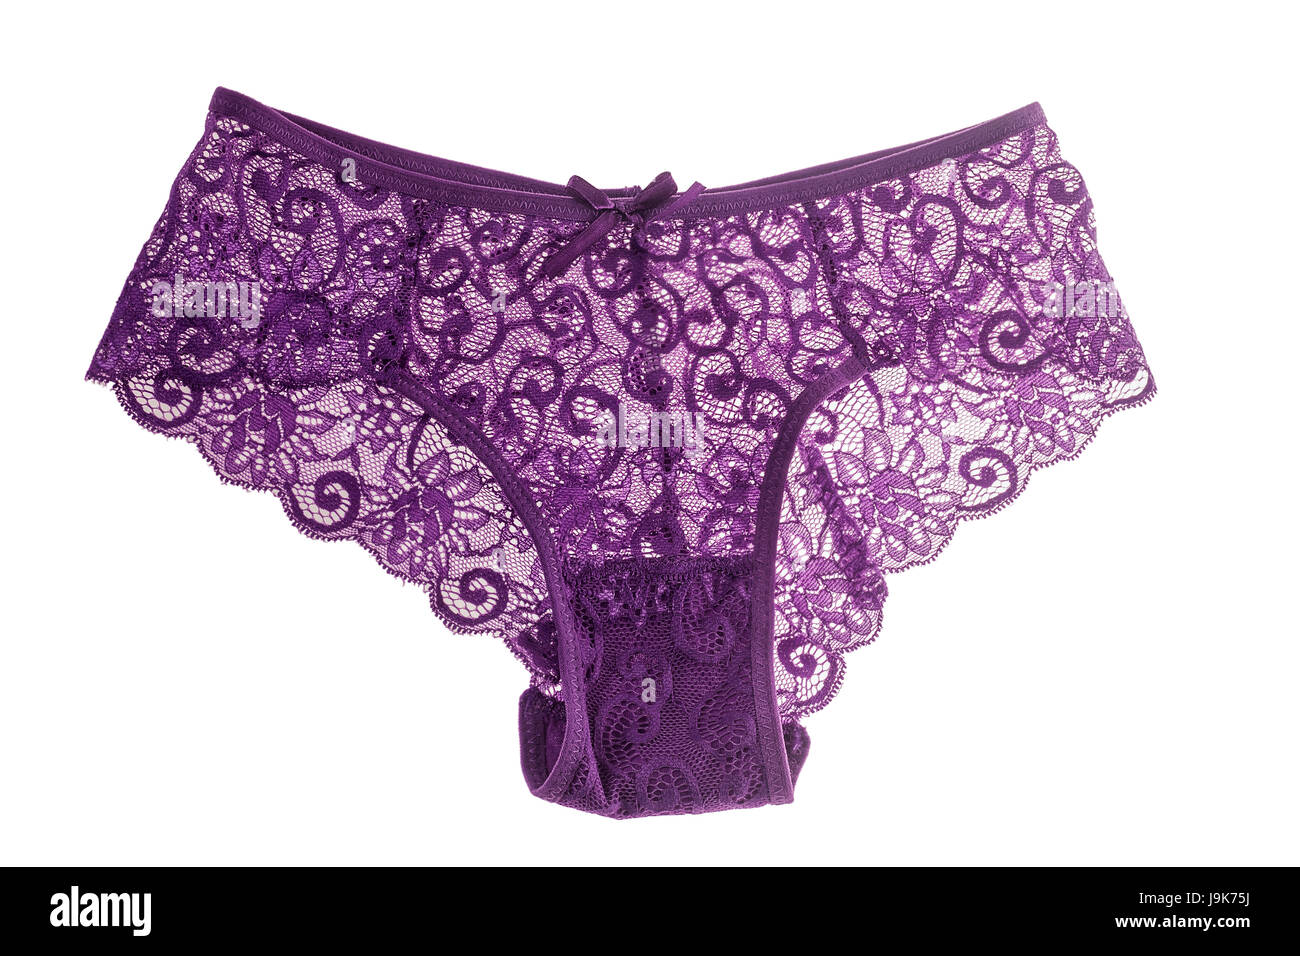 Elegante violett Spitzenhöschen isoliert auf weiss Stockfoto